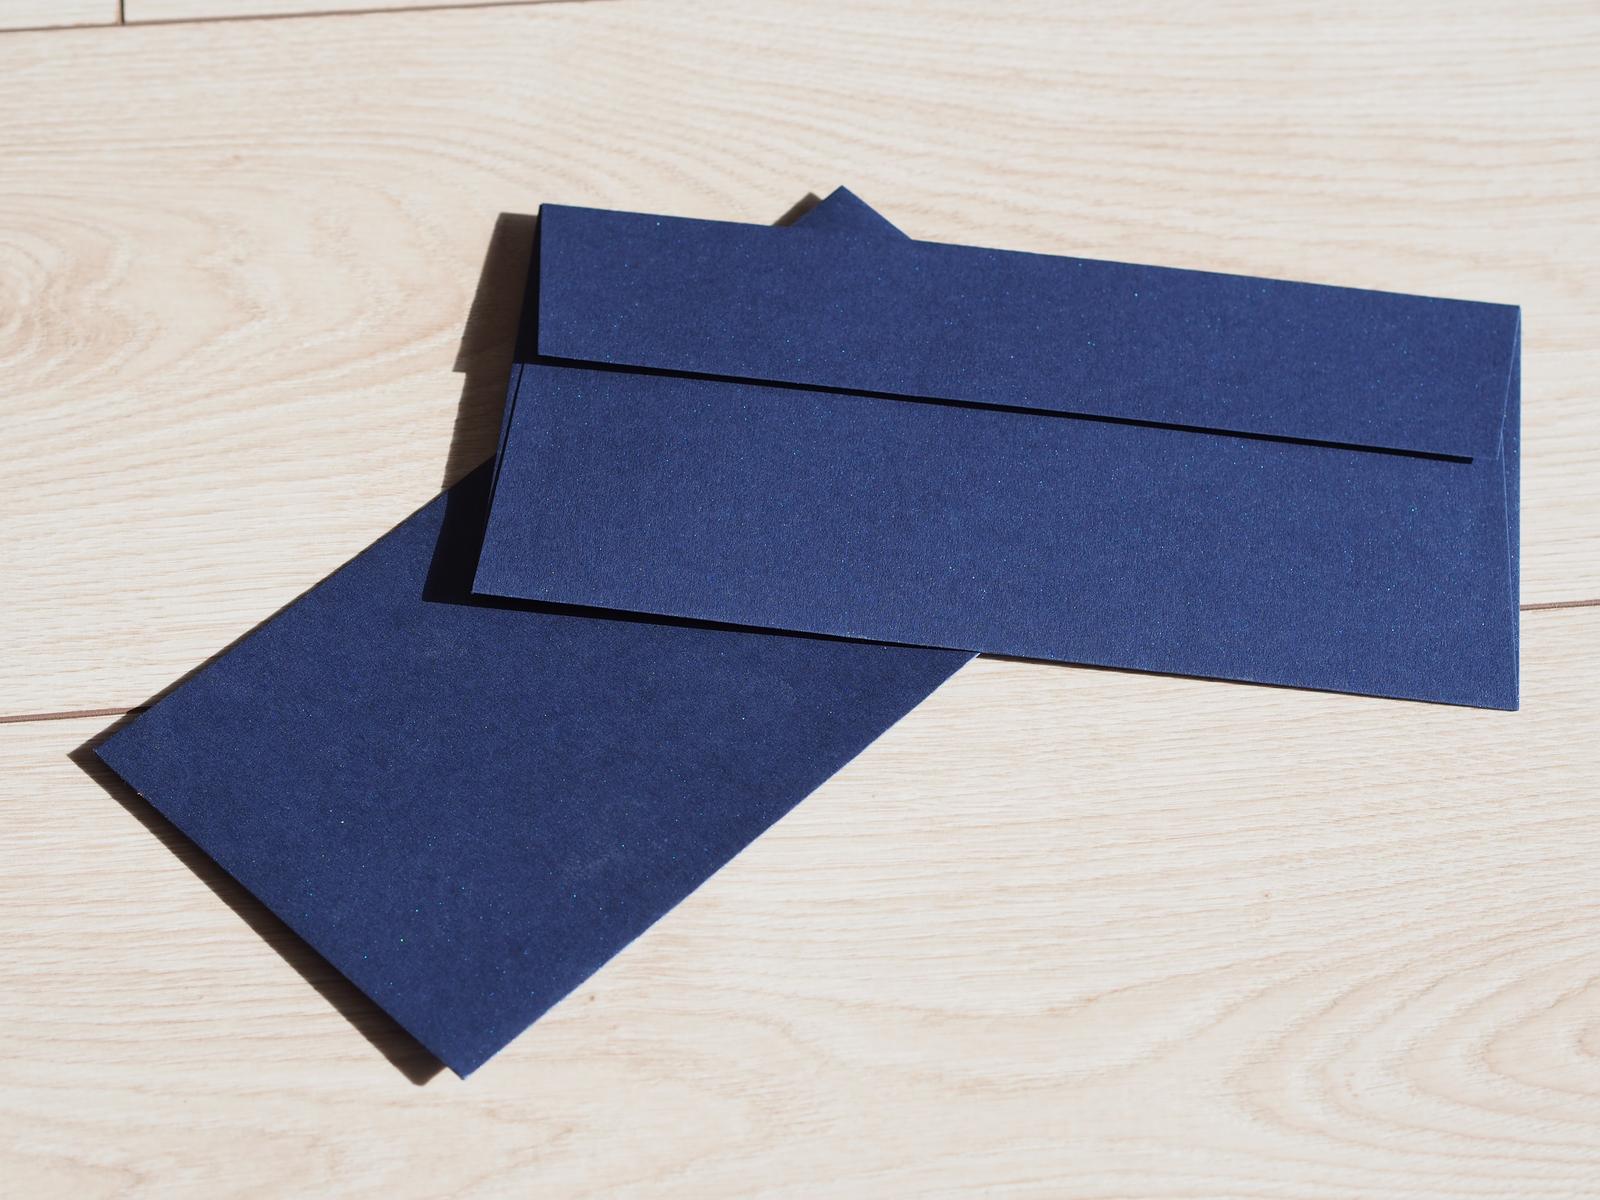 Modré metalické DL obálky 40ks - Obrázek č. 1